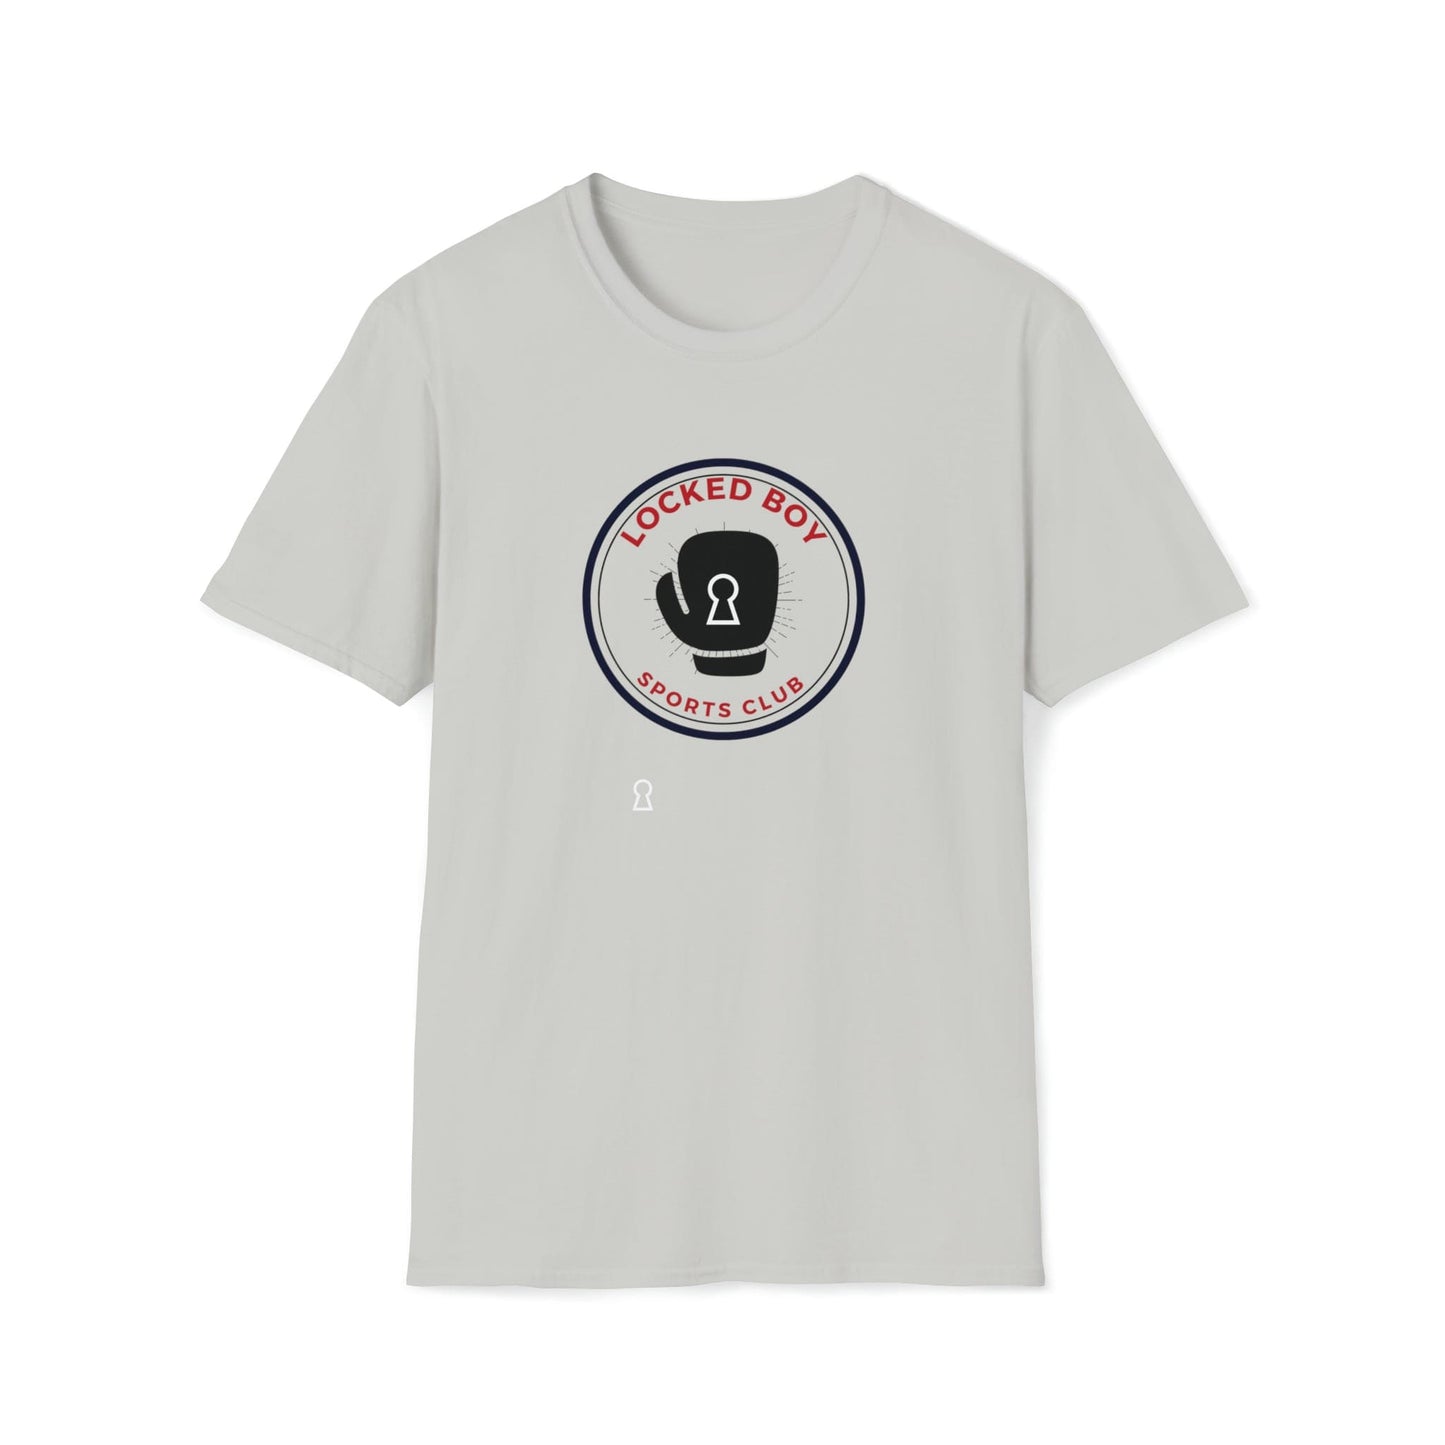 T-Shirt Ice Grey / S LockedBoy Sports Club - Chastity Tshirt Boxing Glove LEATHERDADDY BATOR